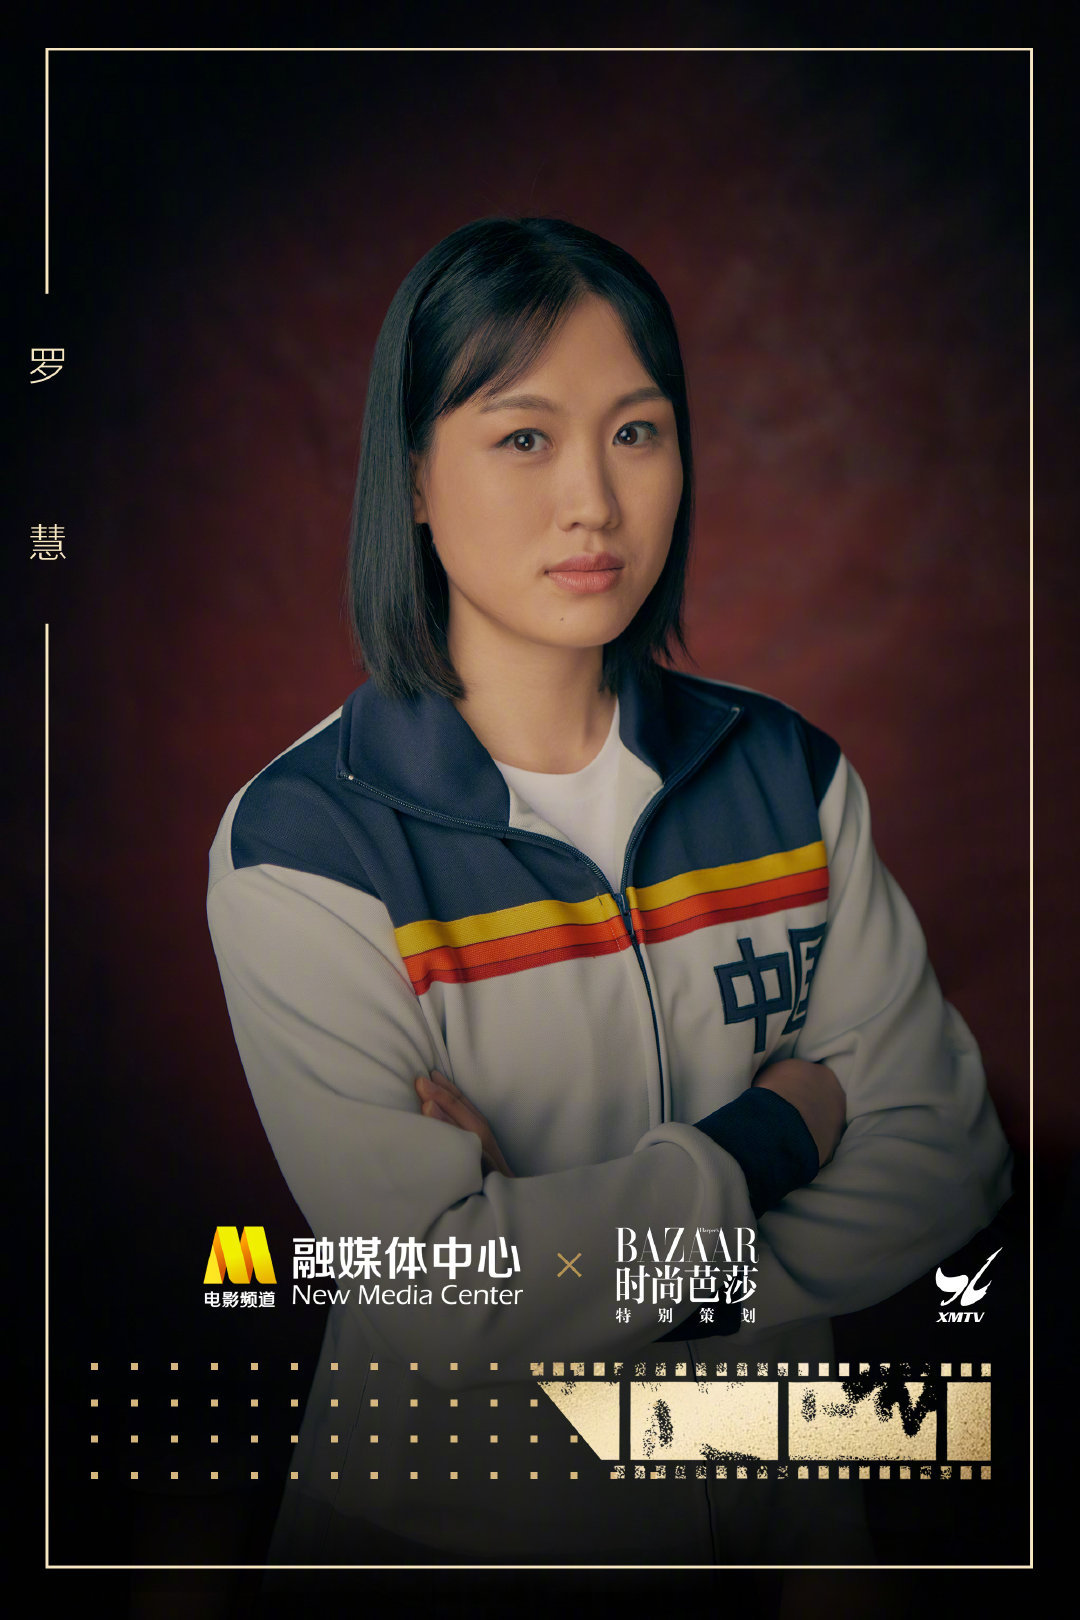 女排联赛天津首发队员_中国女排队员年龄_2016女排夺冠采访队员